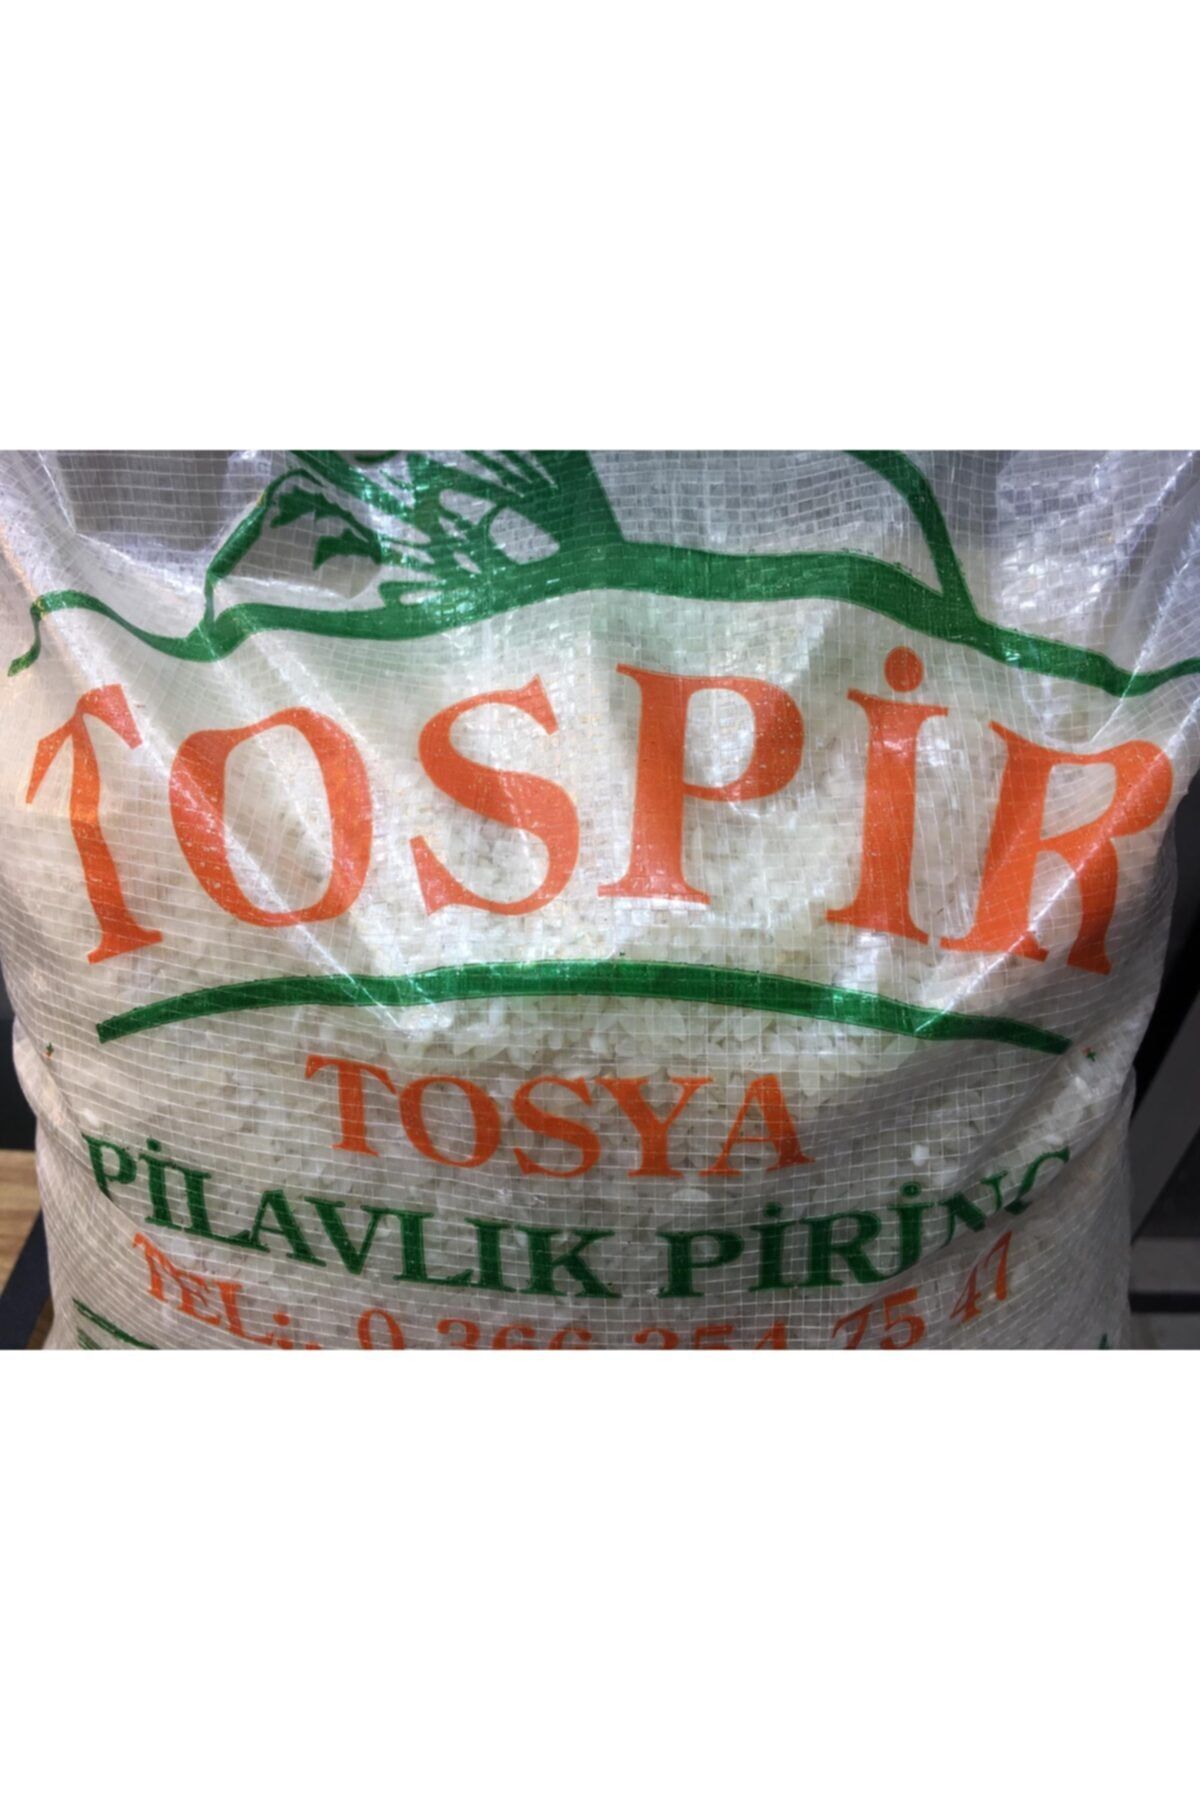 Tospir Tosya Pirinci 5 Kg